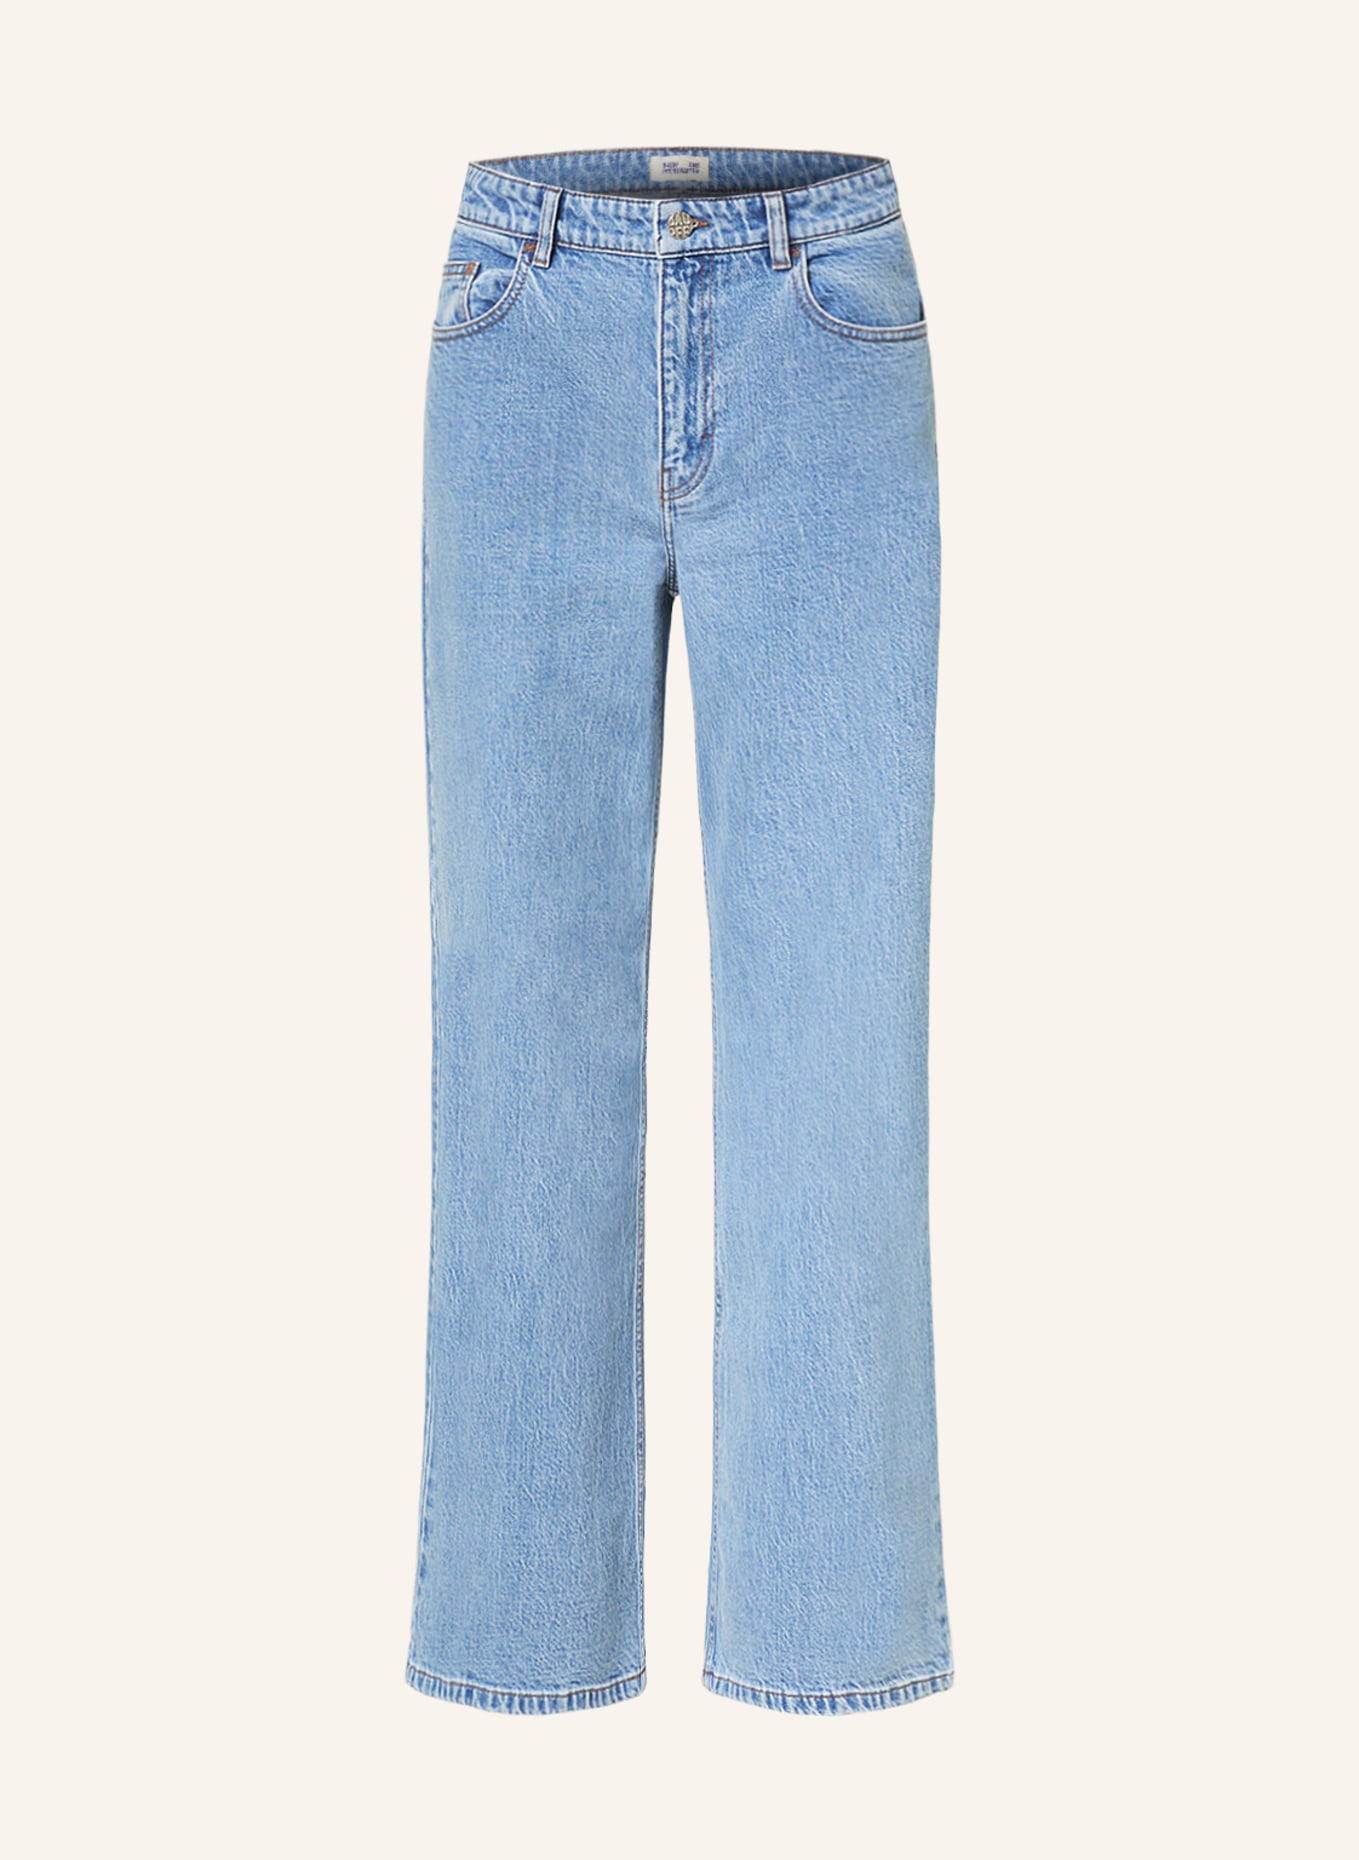 BAUM UND PFERDGARTEN Straight Jeans NINI, Farbe: C7854 Blue Vintage Denim (Bild 1)